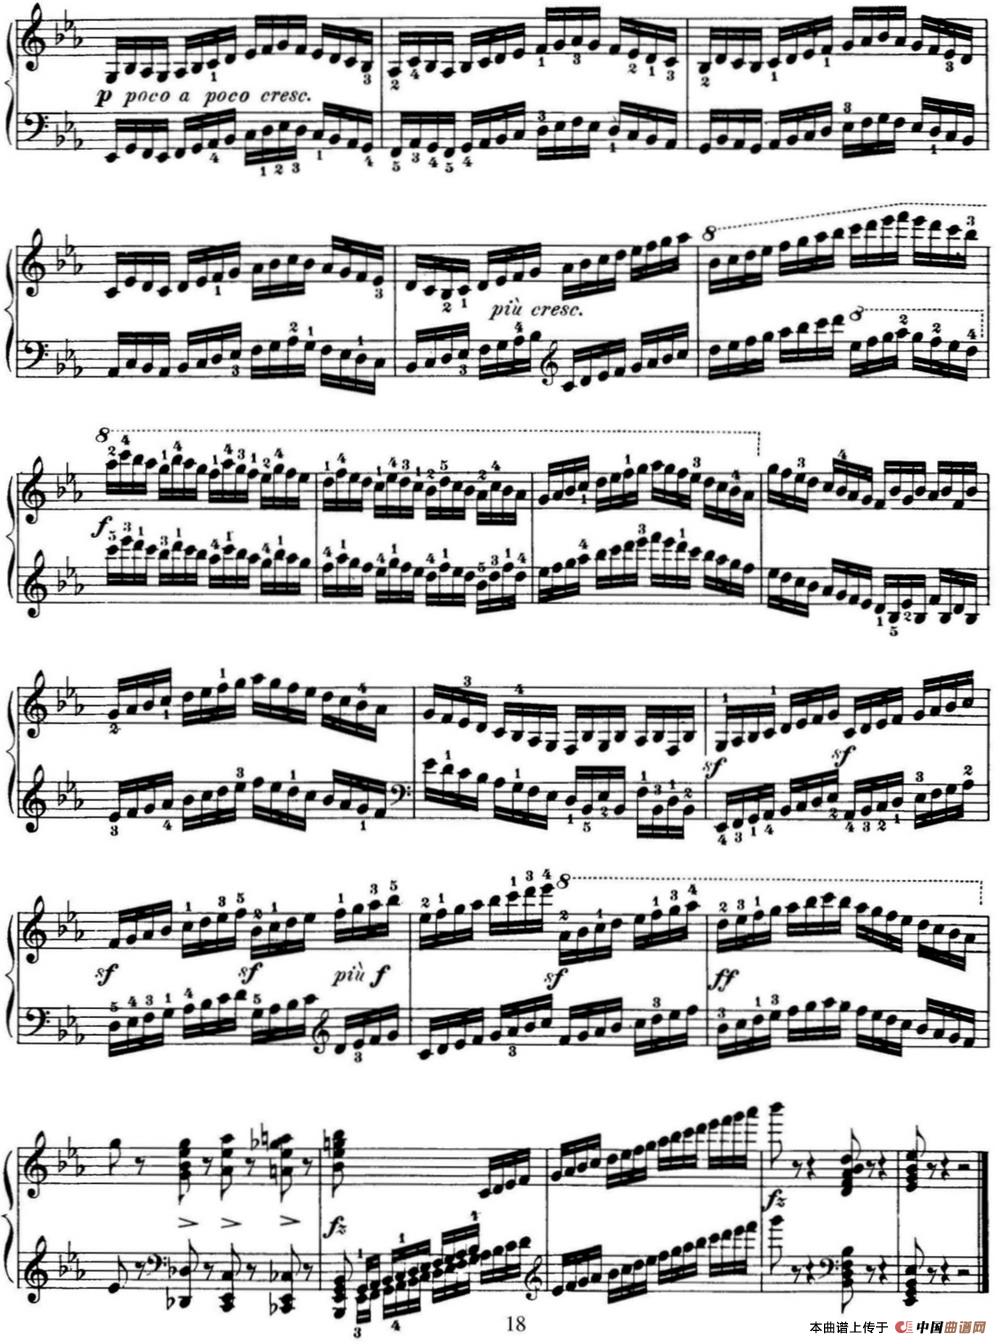 50首车尔尼Op.740钢琴手指灵巧技术练习曲（NO.5）(1)_-C740_页面_018.jpg